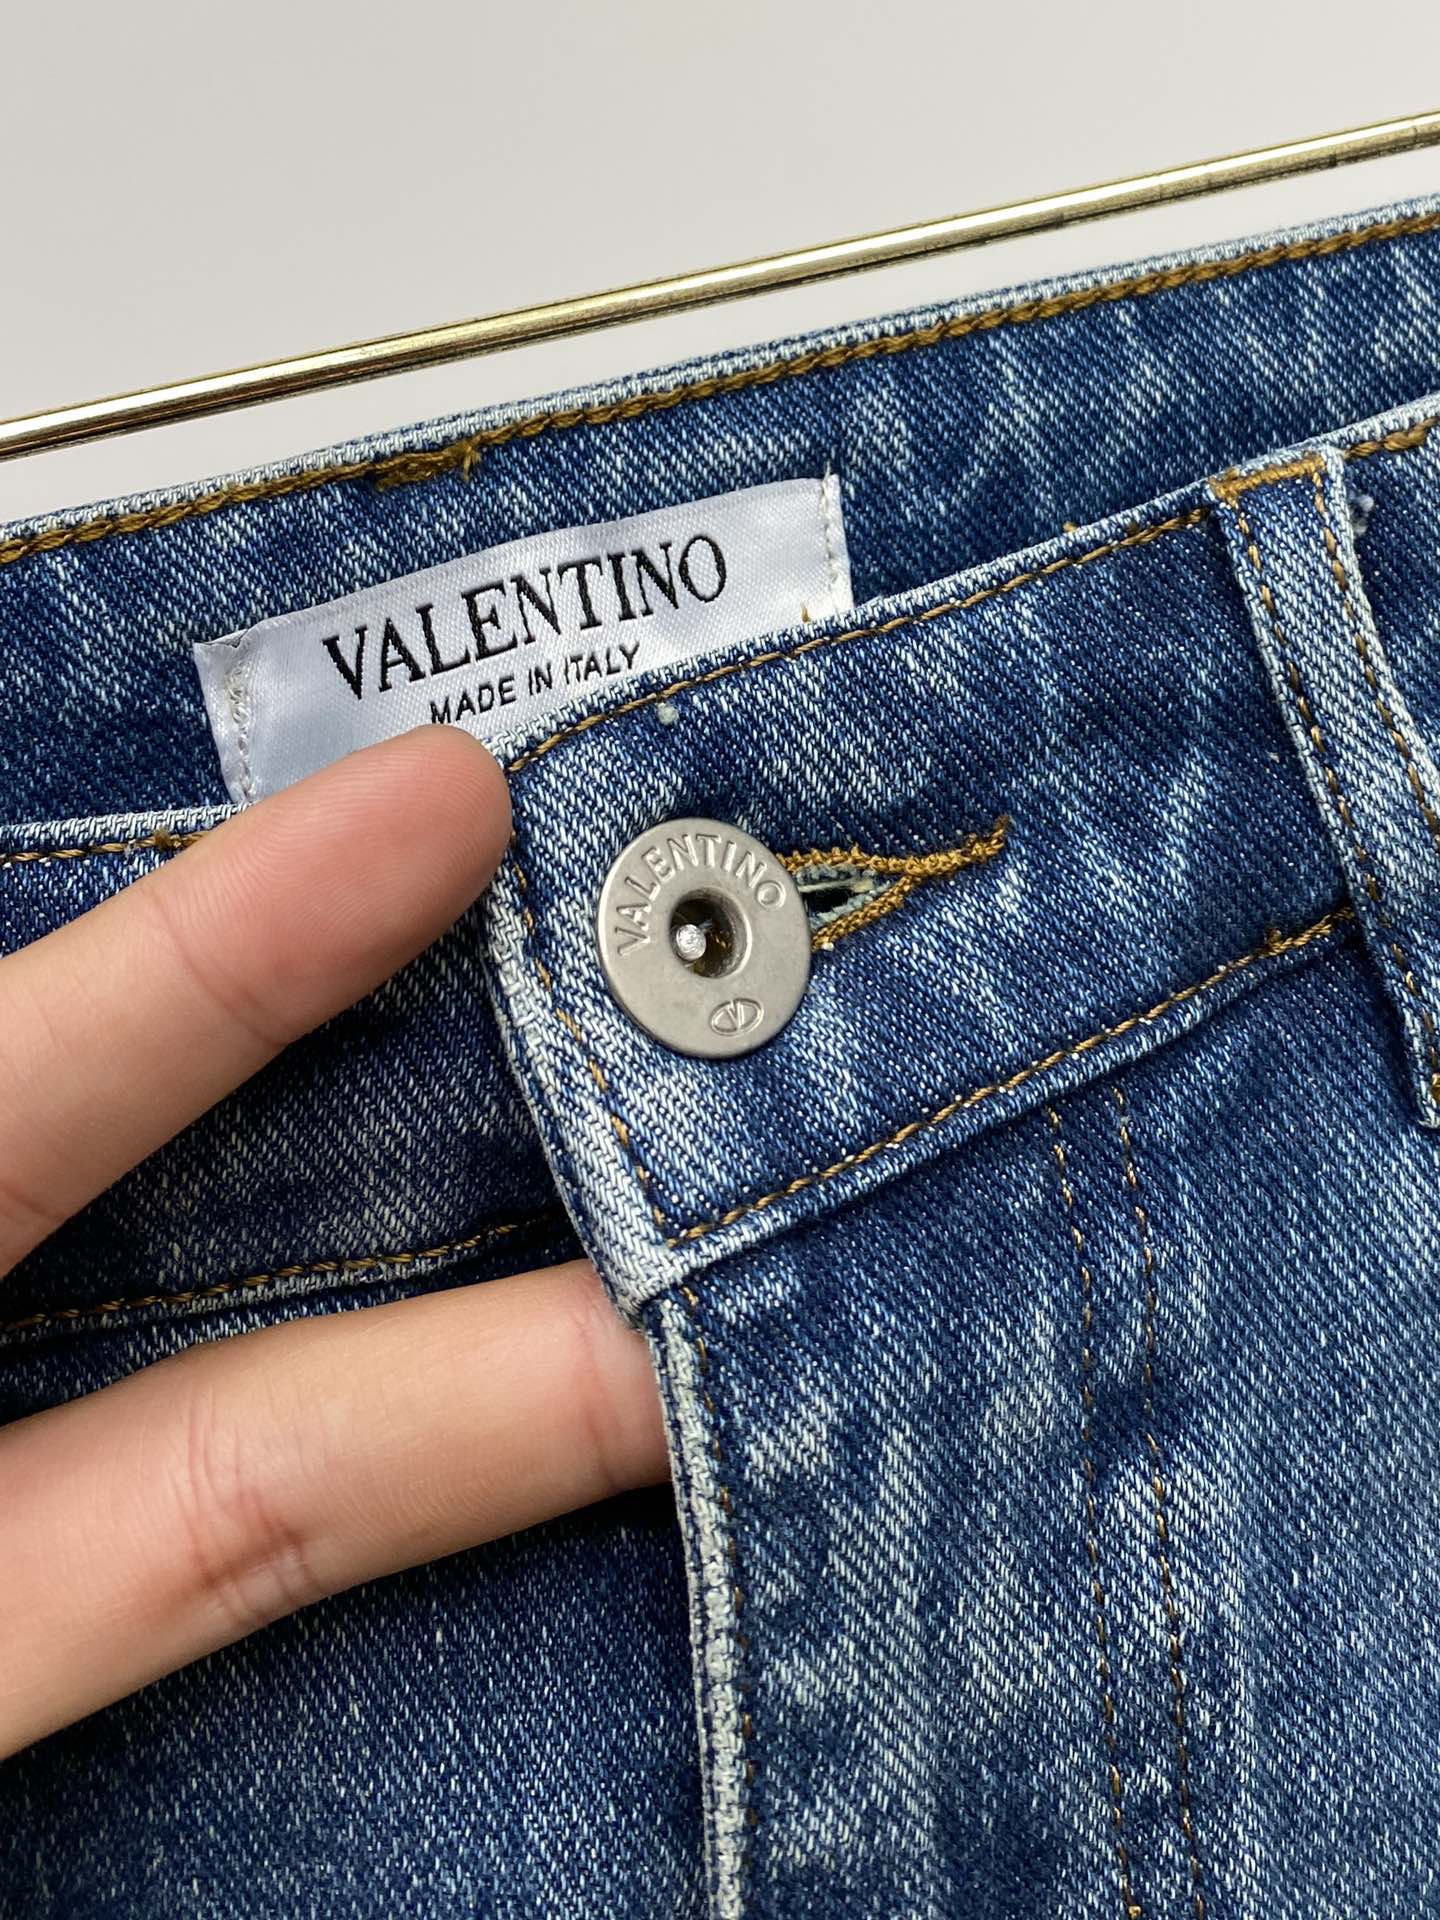 valentino ヴァレンティノジーンズコピー ジーンズ デニム カジュアルパンツ ズボン 弾性がいい シンプル ブルー_4